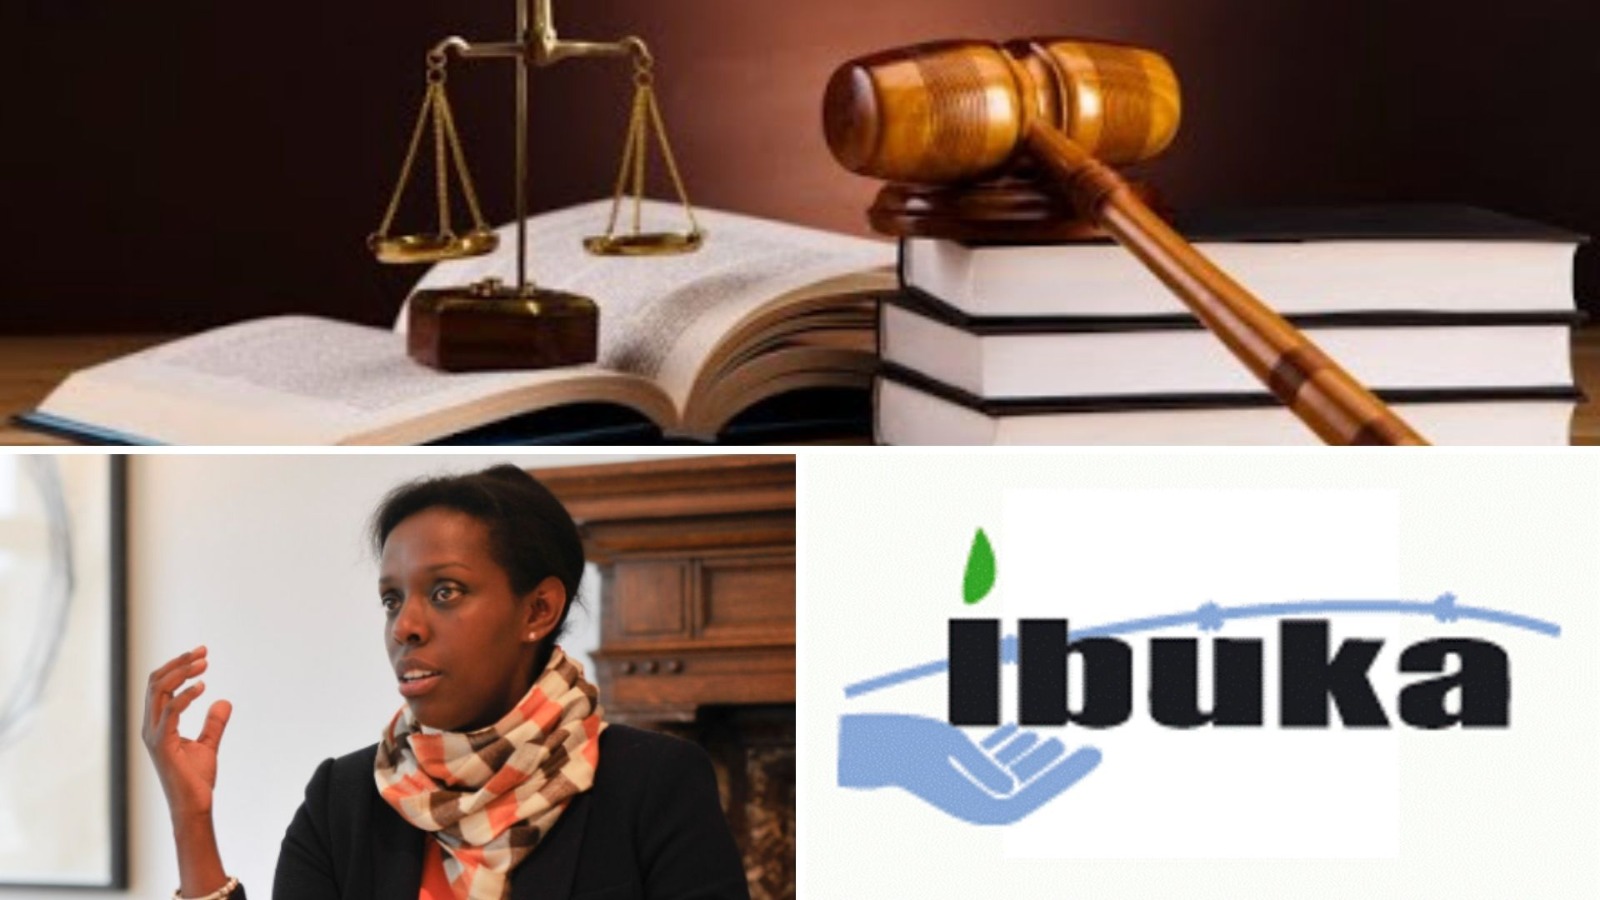 IBUKA-Belgique bientôt dissoute par la Justice belge ?